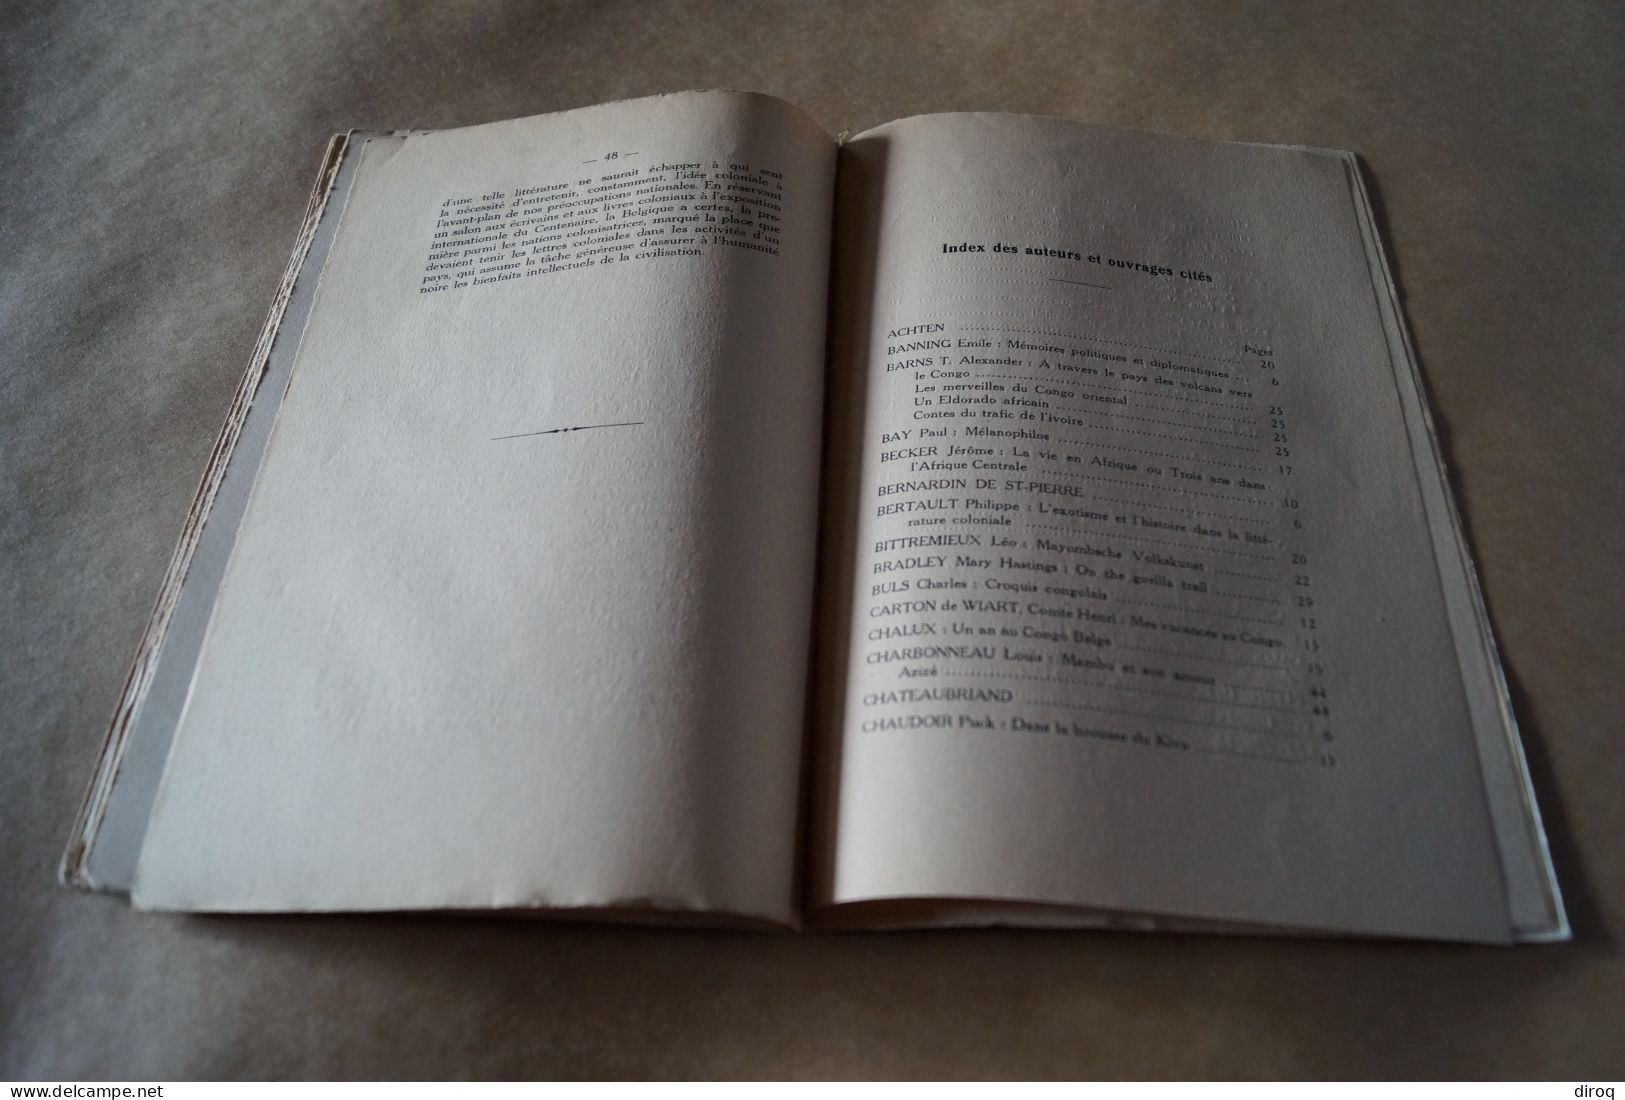 Congo Belge,1930,notes de littérature coloniale,Gaston-Denys Périer,54 pages,25,5 Cm. sur 17 Cm.